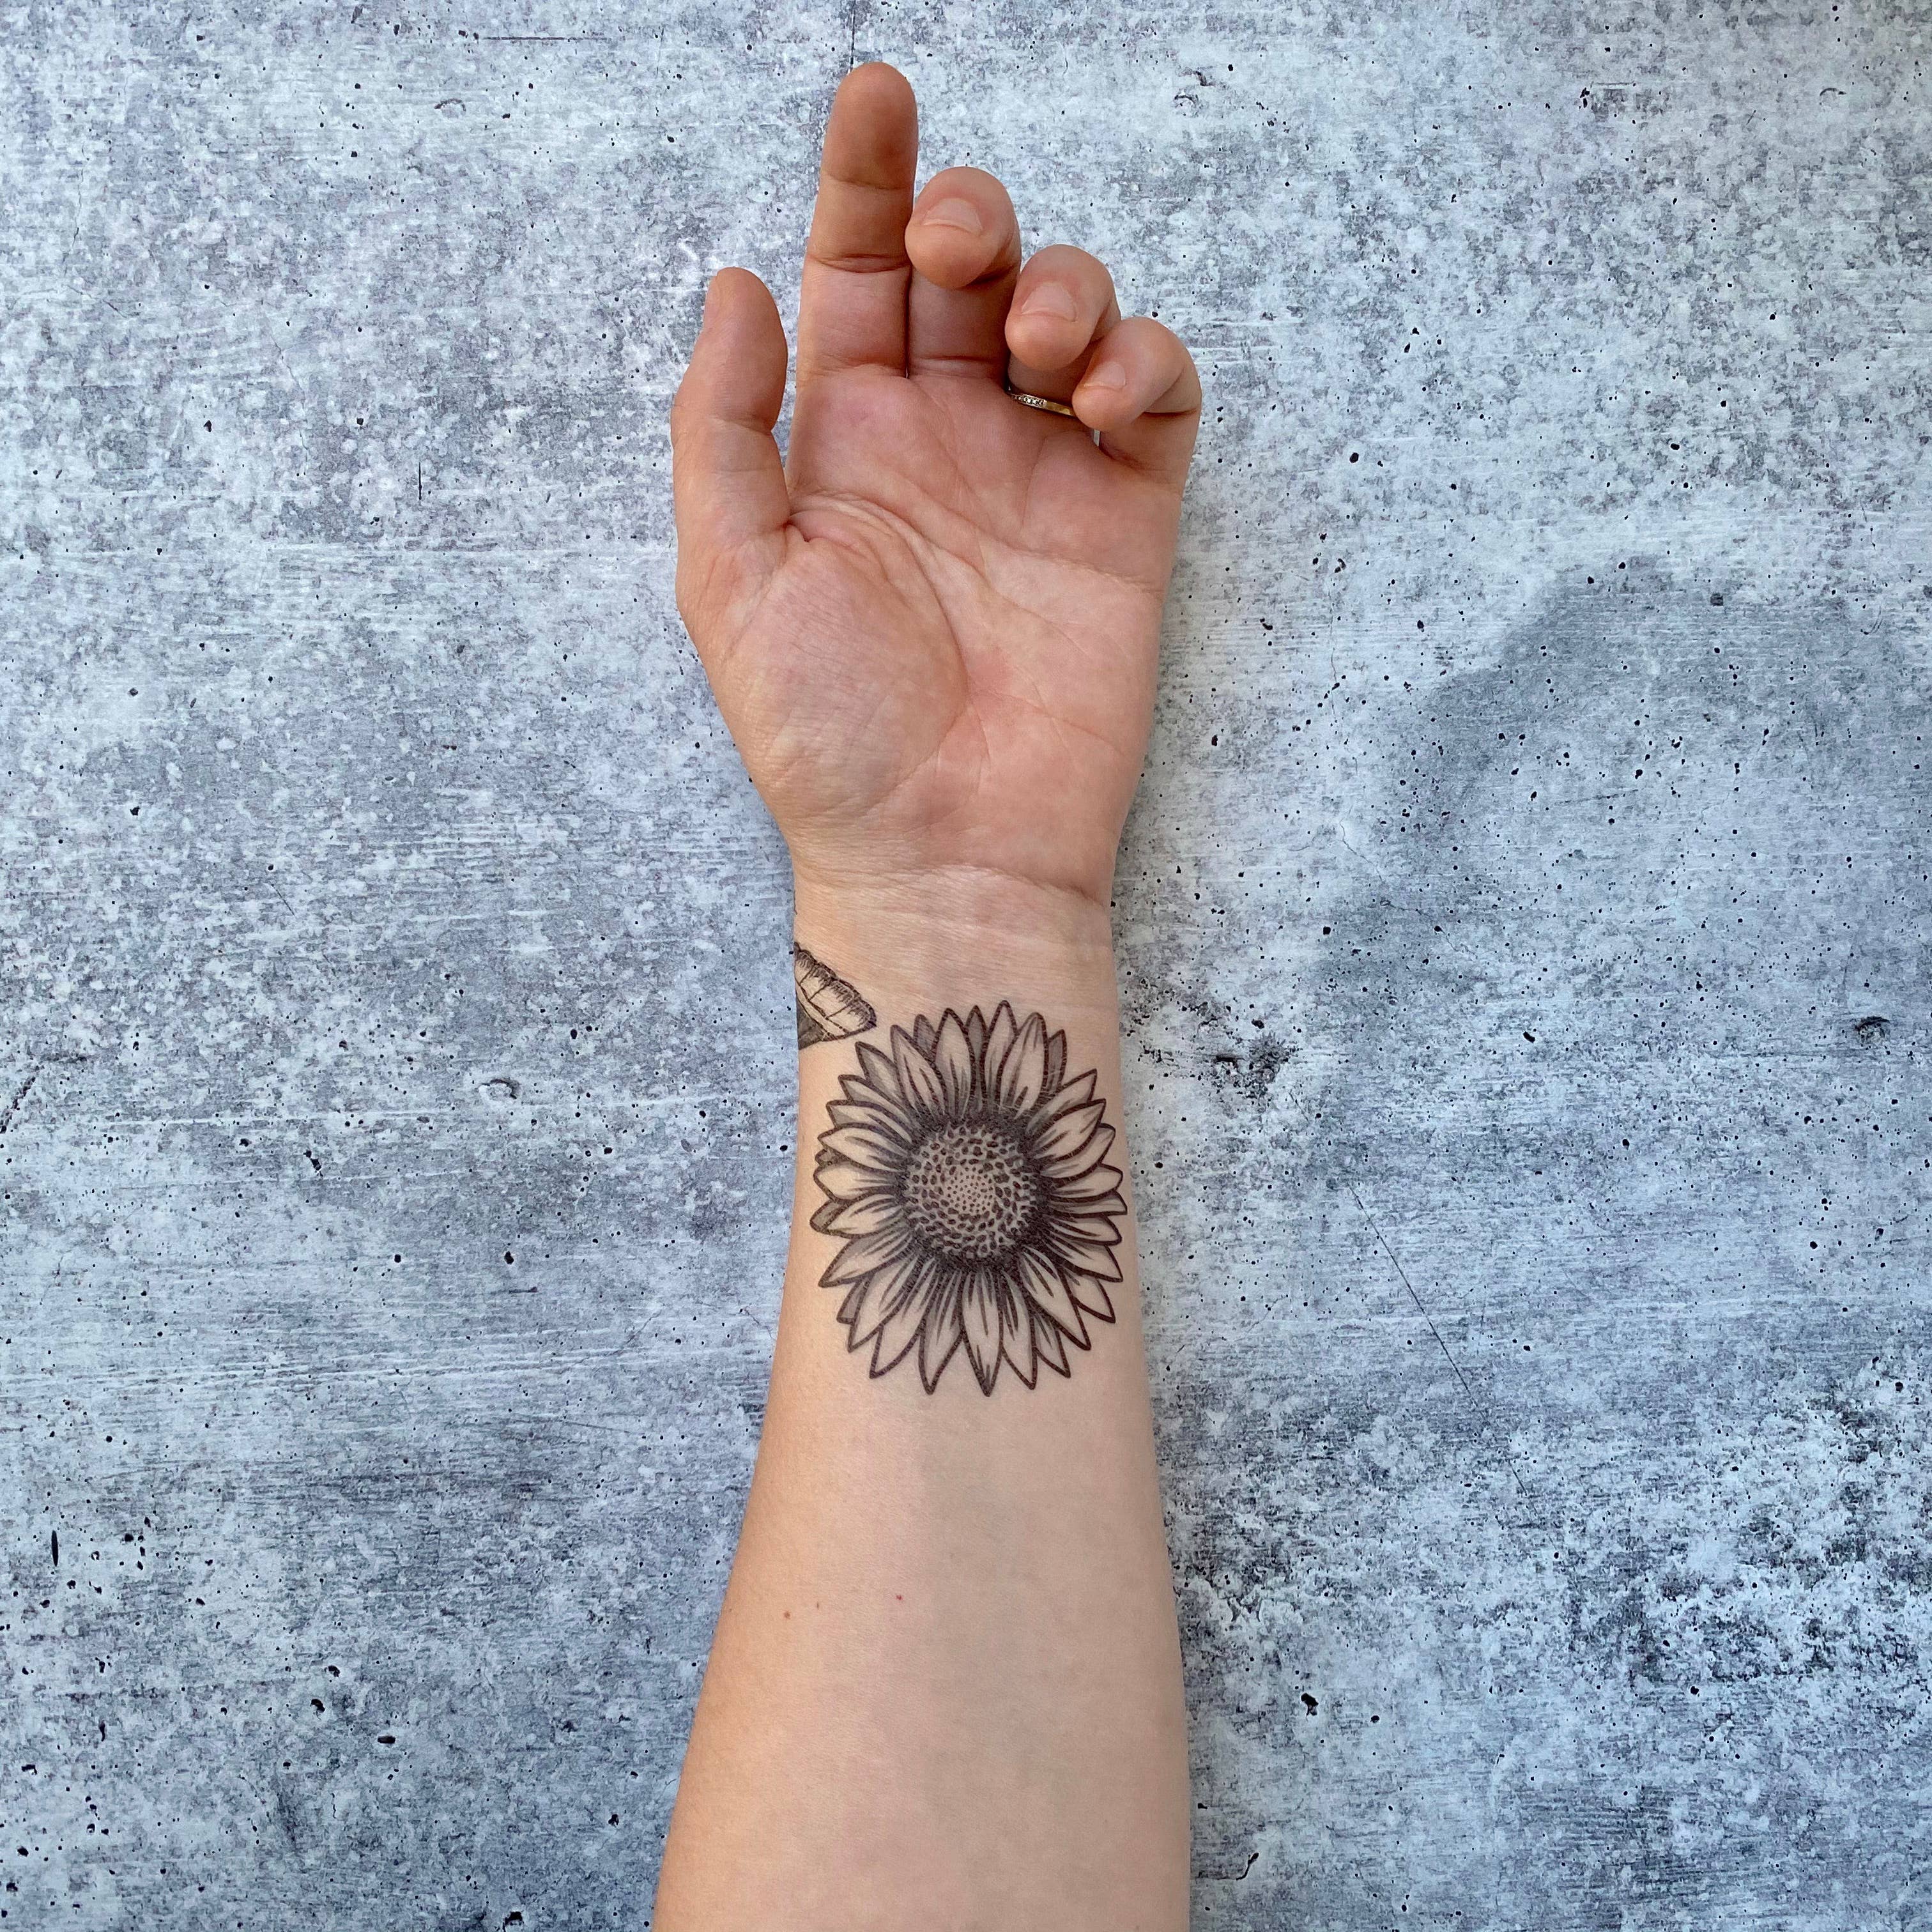 Andok Çelik Tattoo on Instagram S U N F L O W E R           tattoo tattoodesign tattooideas tattooart sunflower  sunflowertattoo